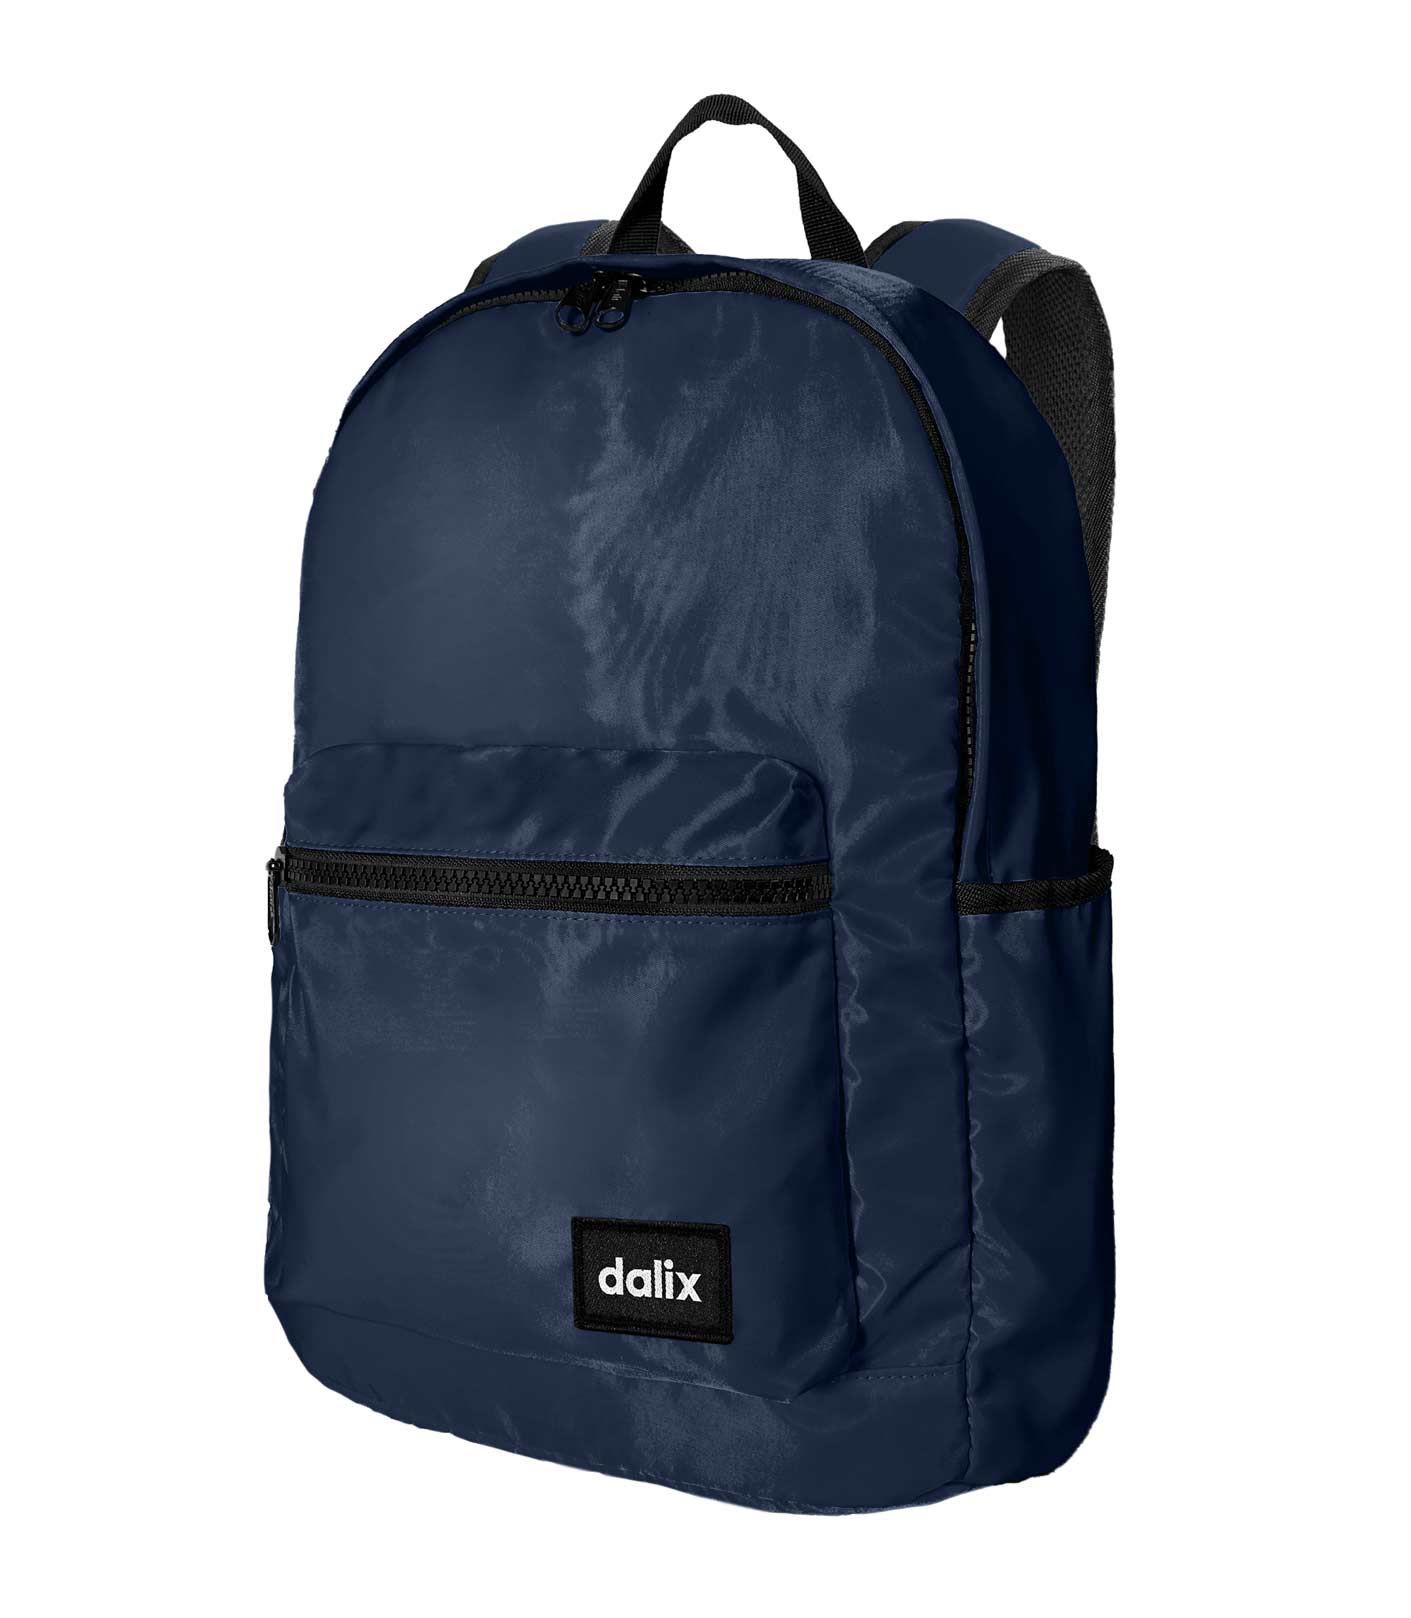 Dalix Classic Vibes Backpack